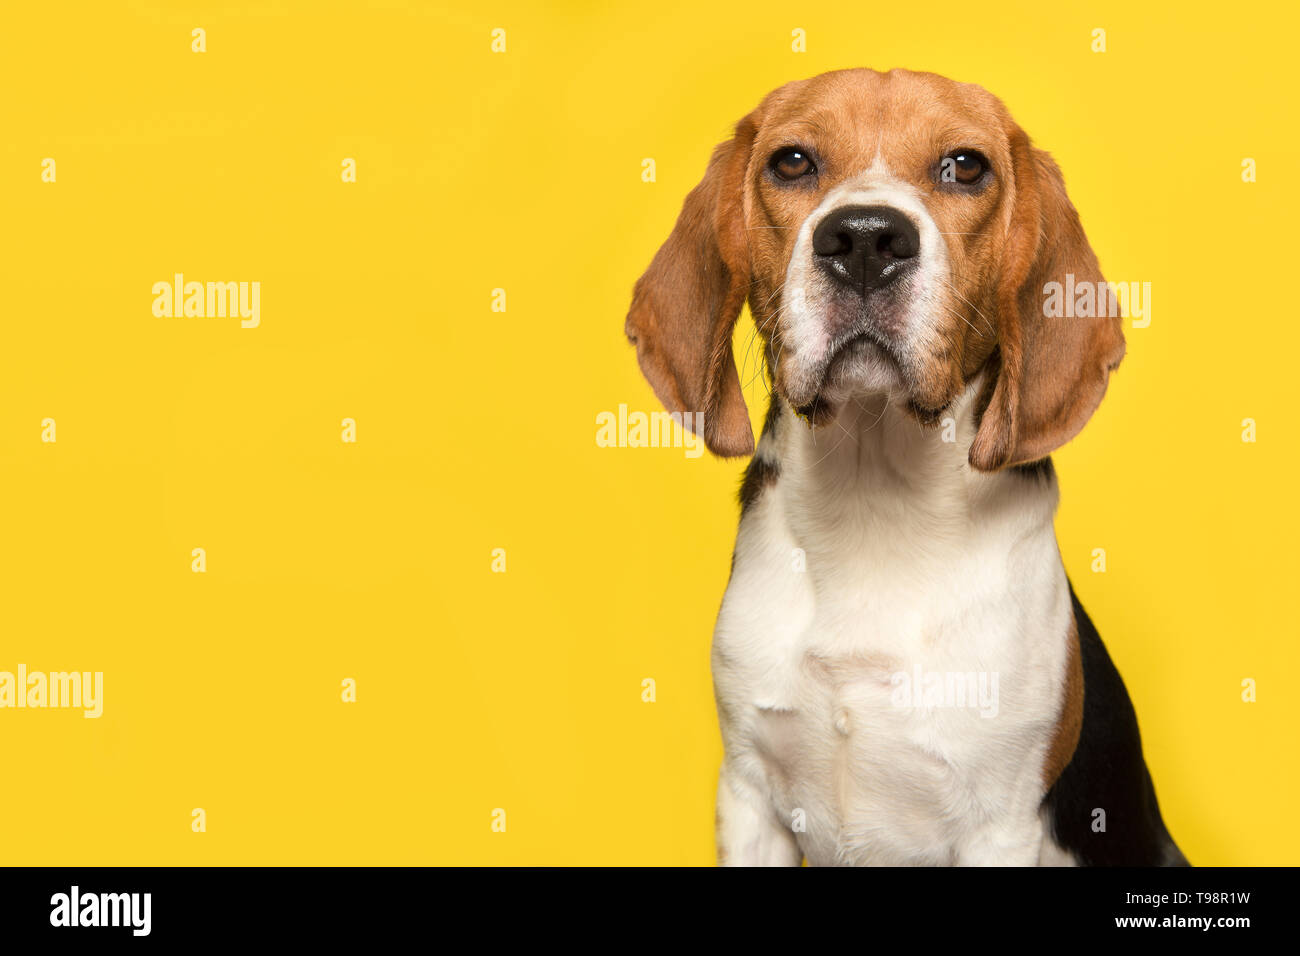 Portrait d'un beagle regardant la caméra sur un fond jaune dans une image horizontale avec espace pour copier Banque D'Images